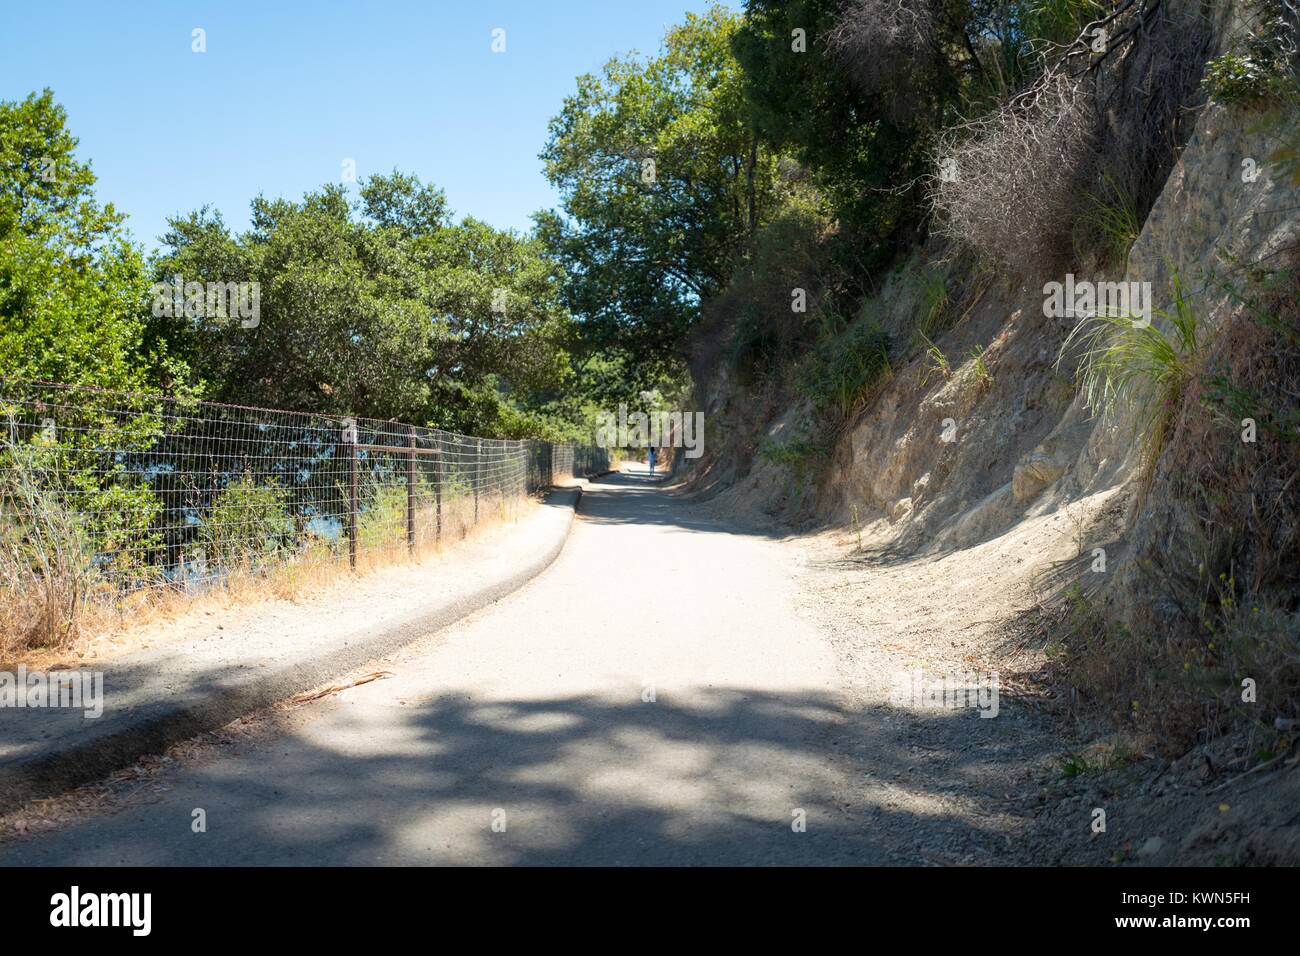 Sentier au Parc régional du lac Chabot, un Orient Bay Regional Park dans la région de la baie de San Francisco la ville de San Leandro, Californie, le 16 juillet 2017. Banque D'Images